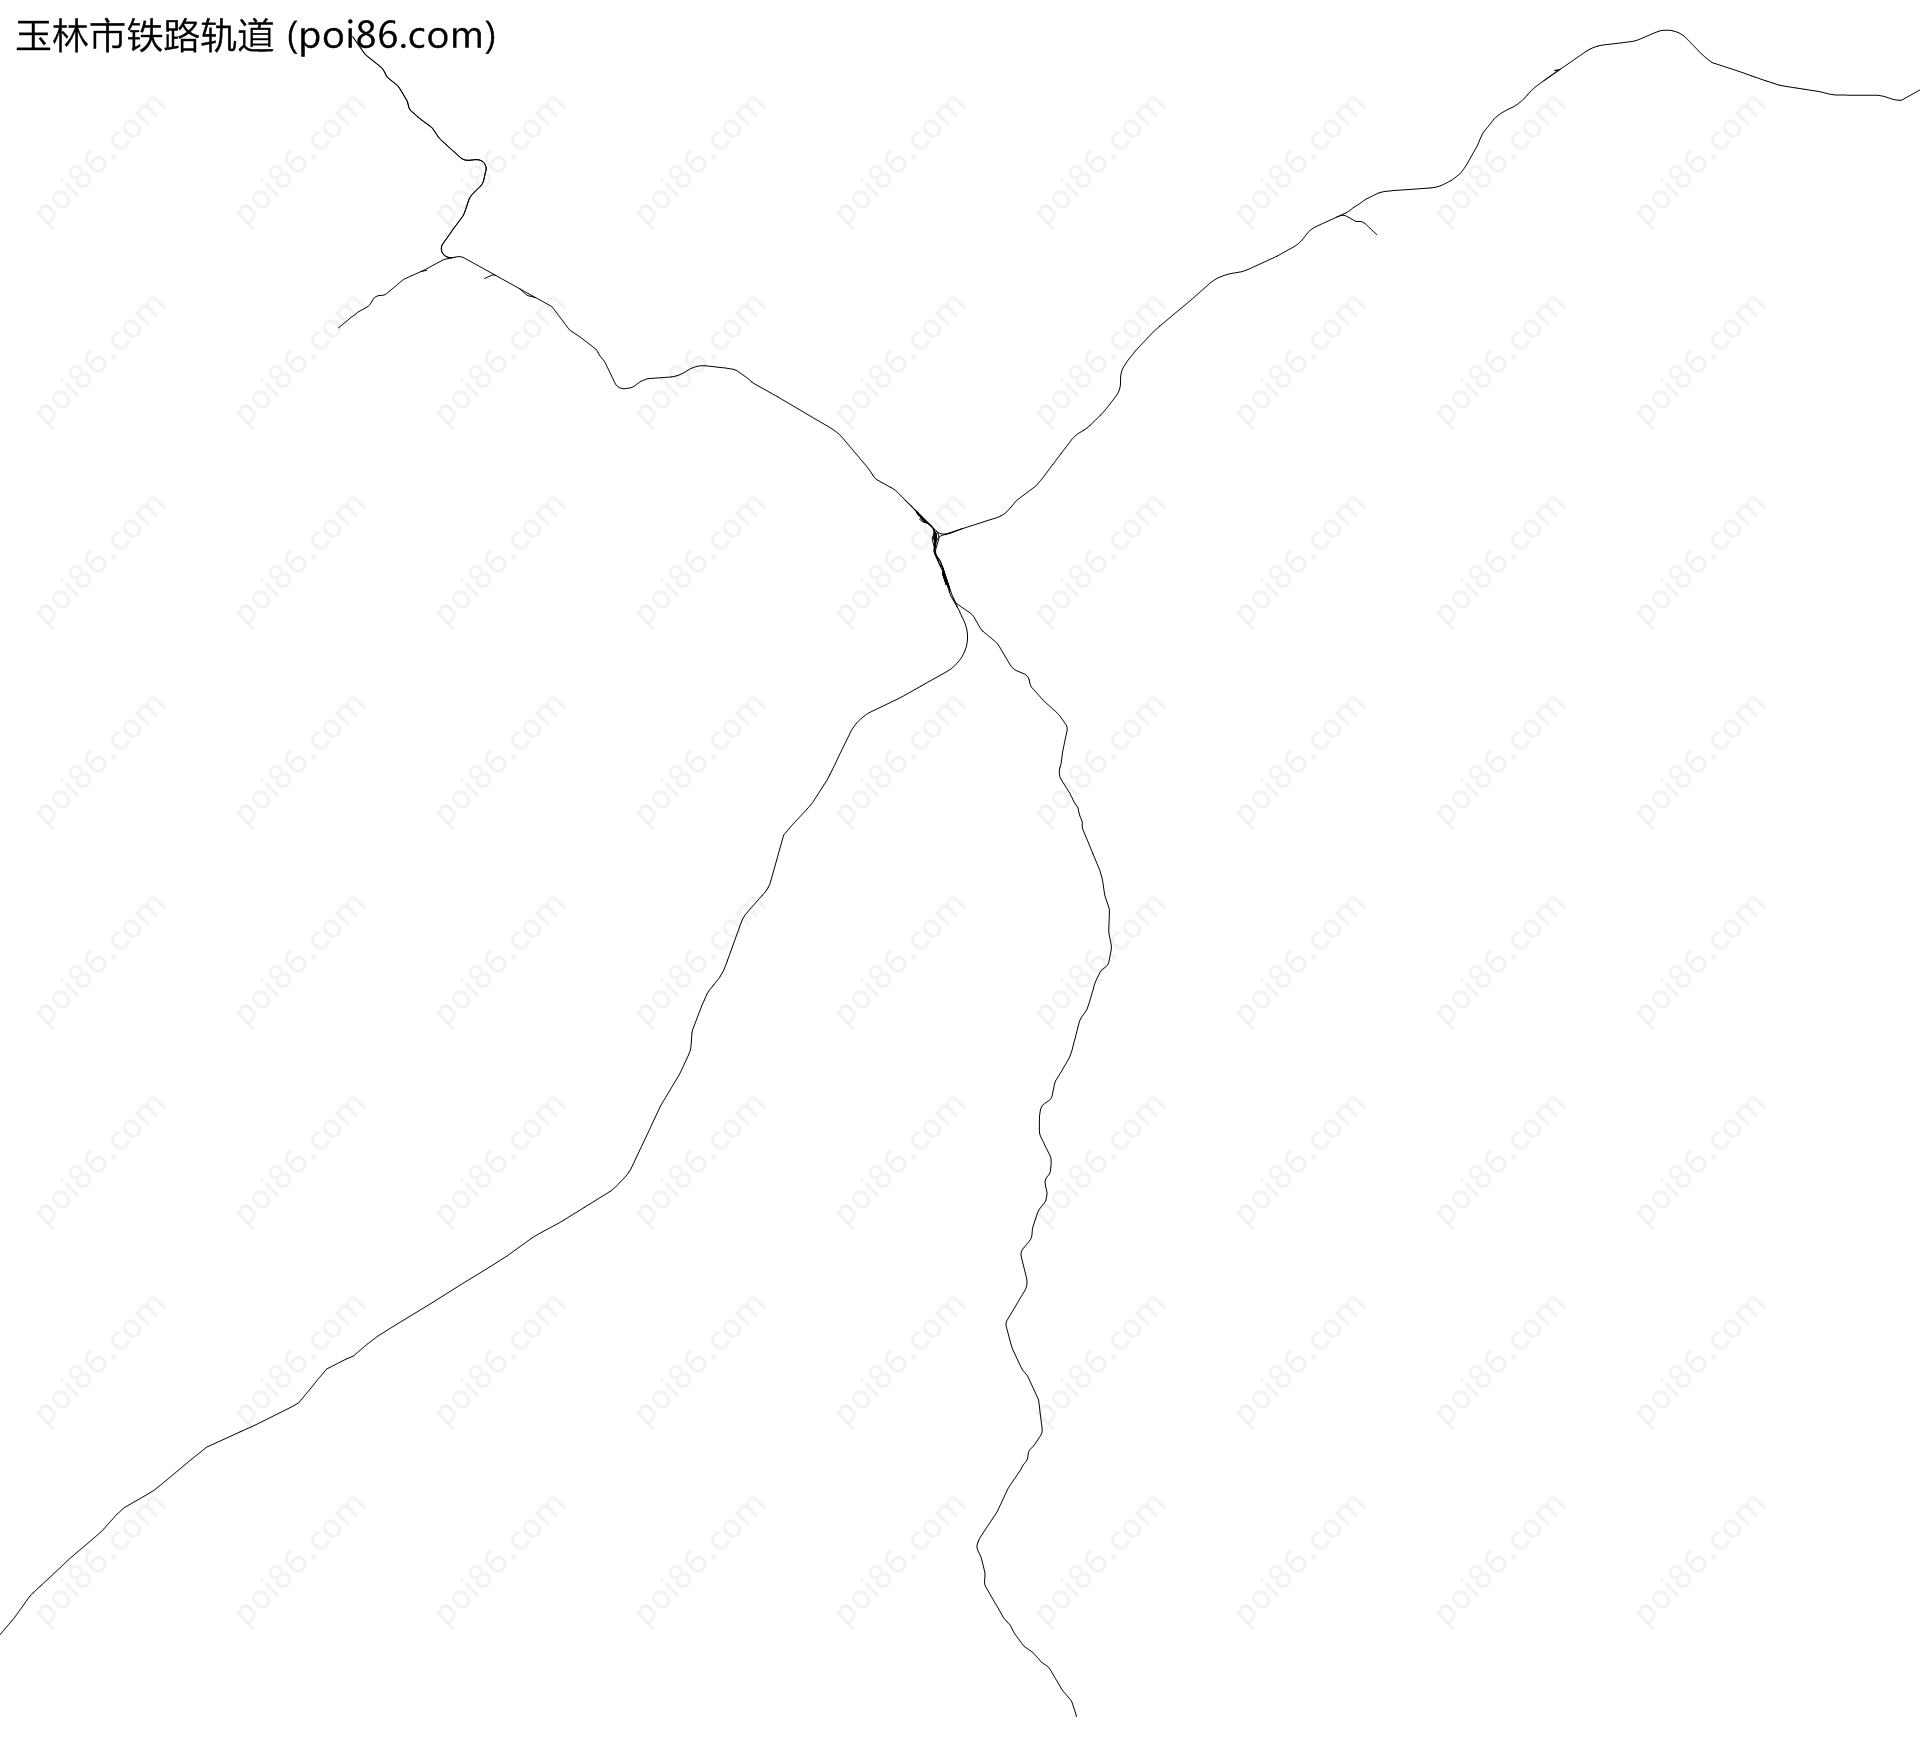 玉林市铁路轨道地图